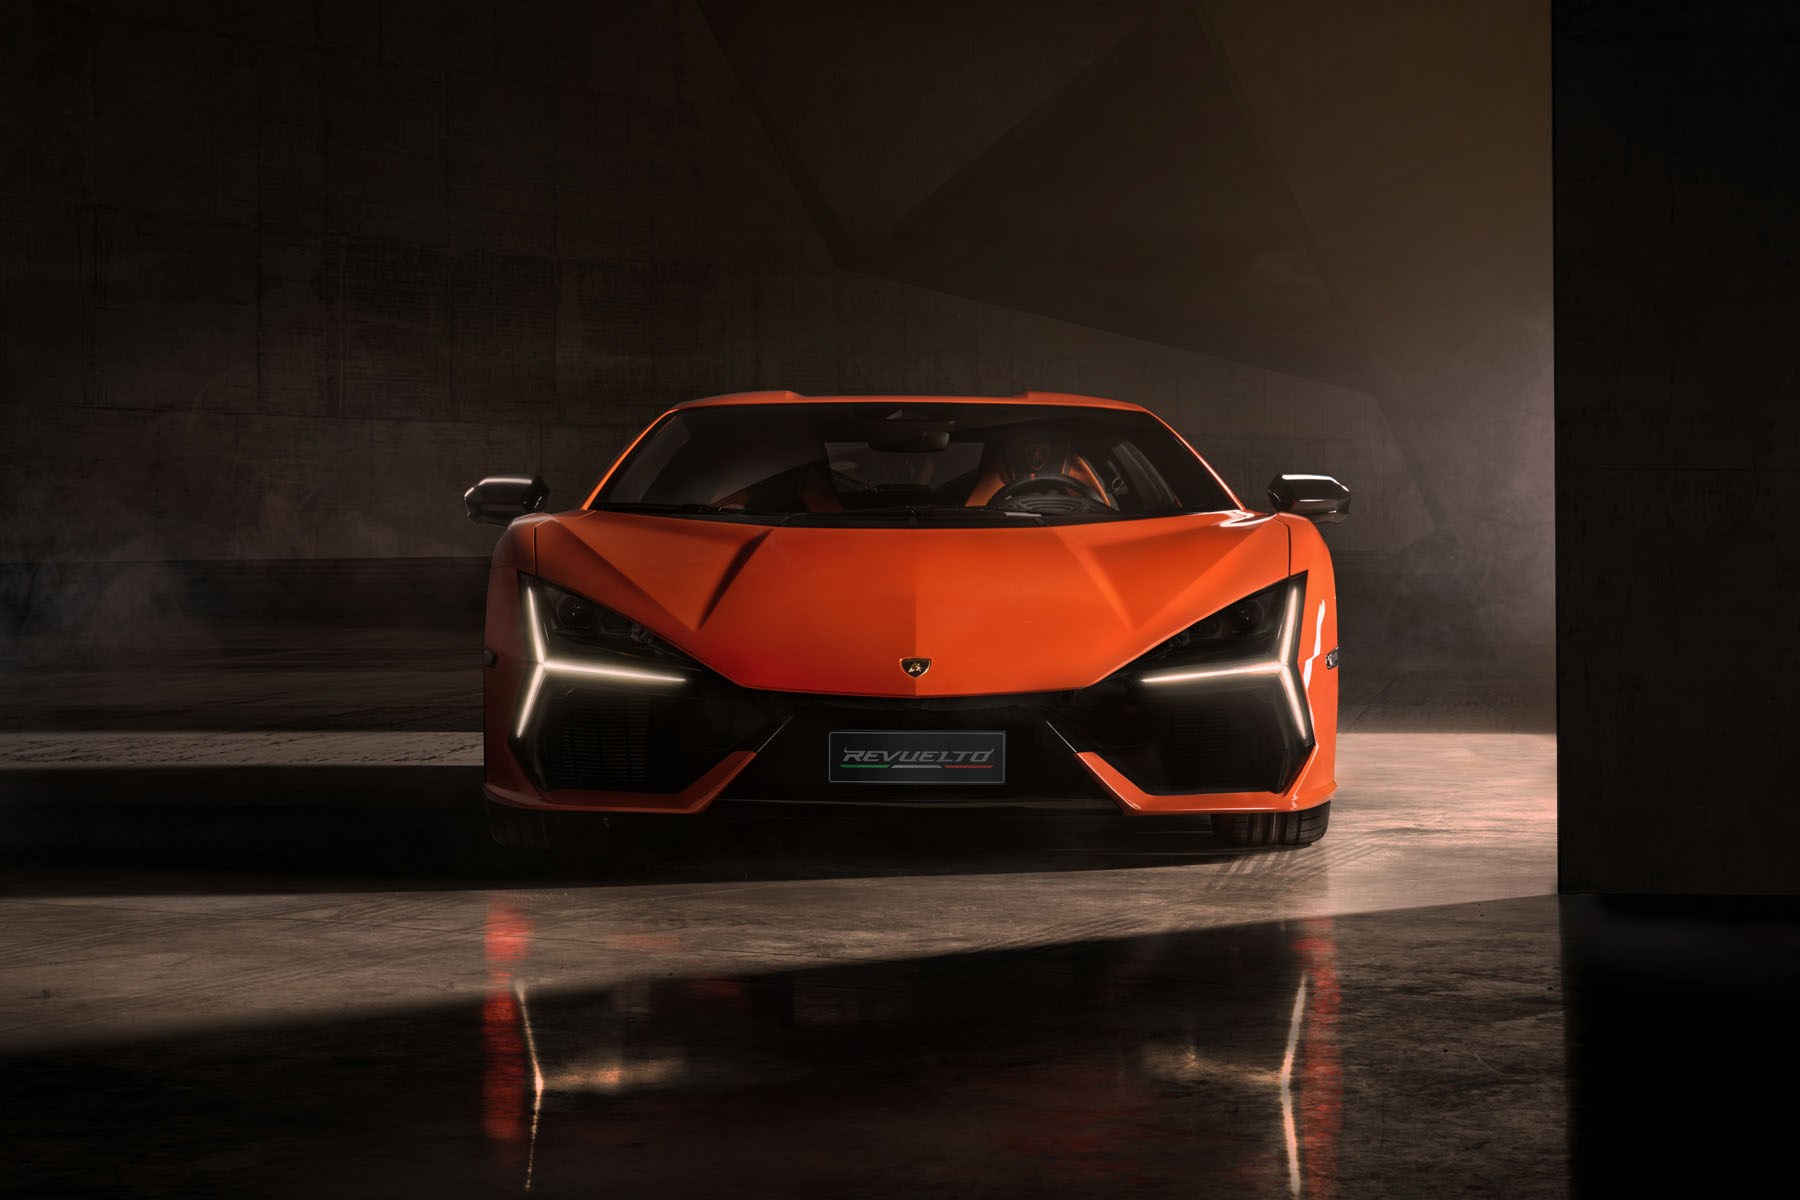 Lamborghini Revuelto: the first super sports V12 hybrid HPEV - EV Design &  Manufacturing